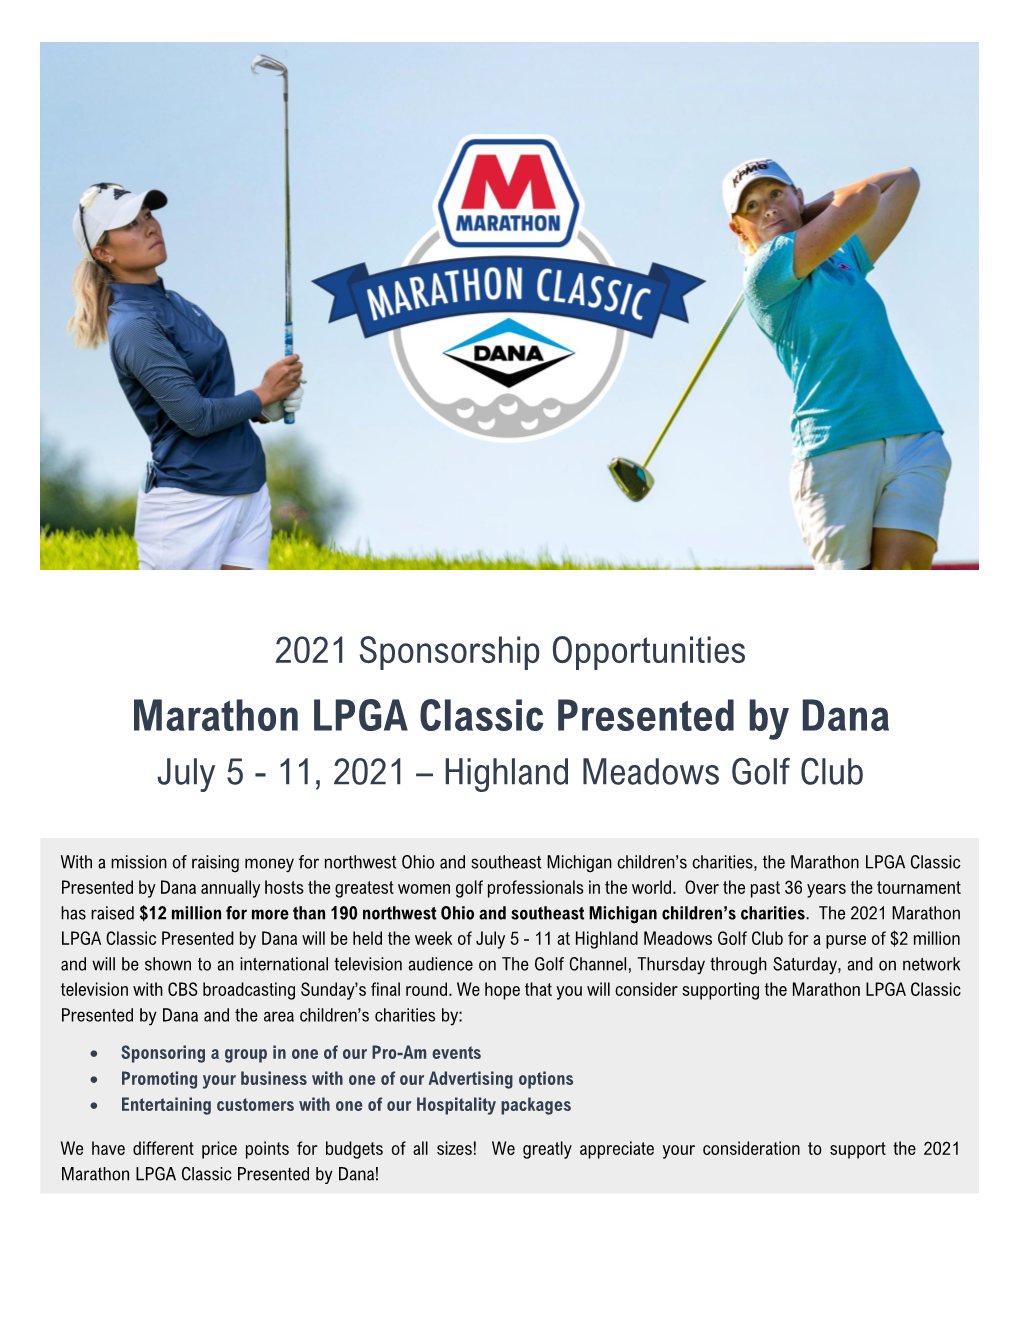 Marathon LPGA Classic Presented by Dana July 5 - 11, 2021 – Highland Meadows Golf Club